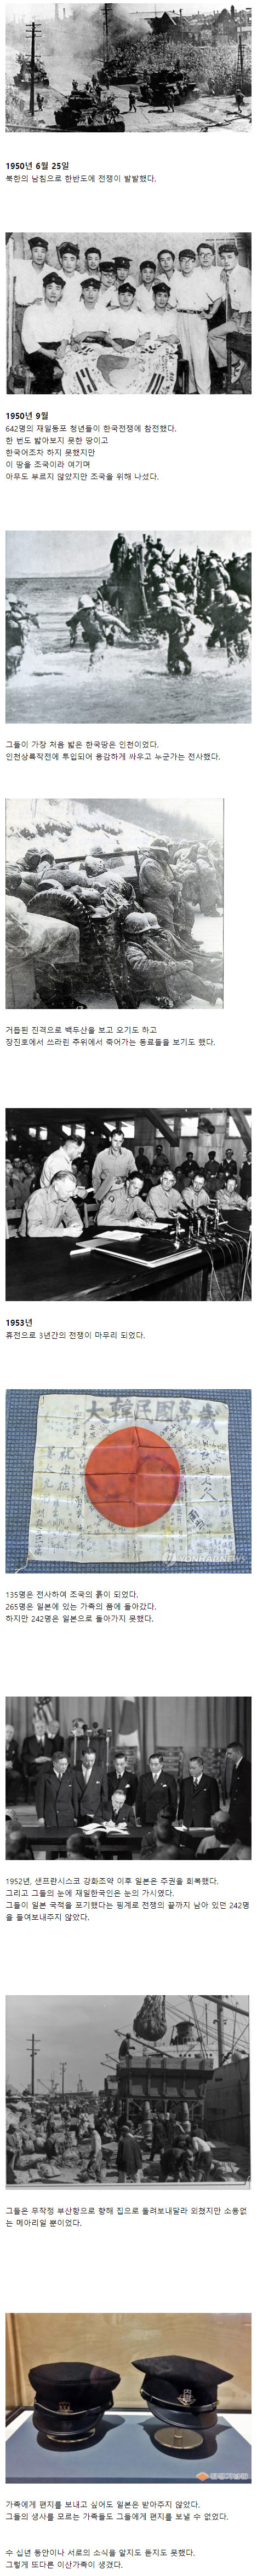 한국사의 잊혀진 비극